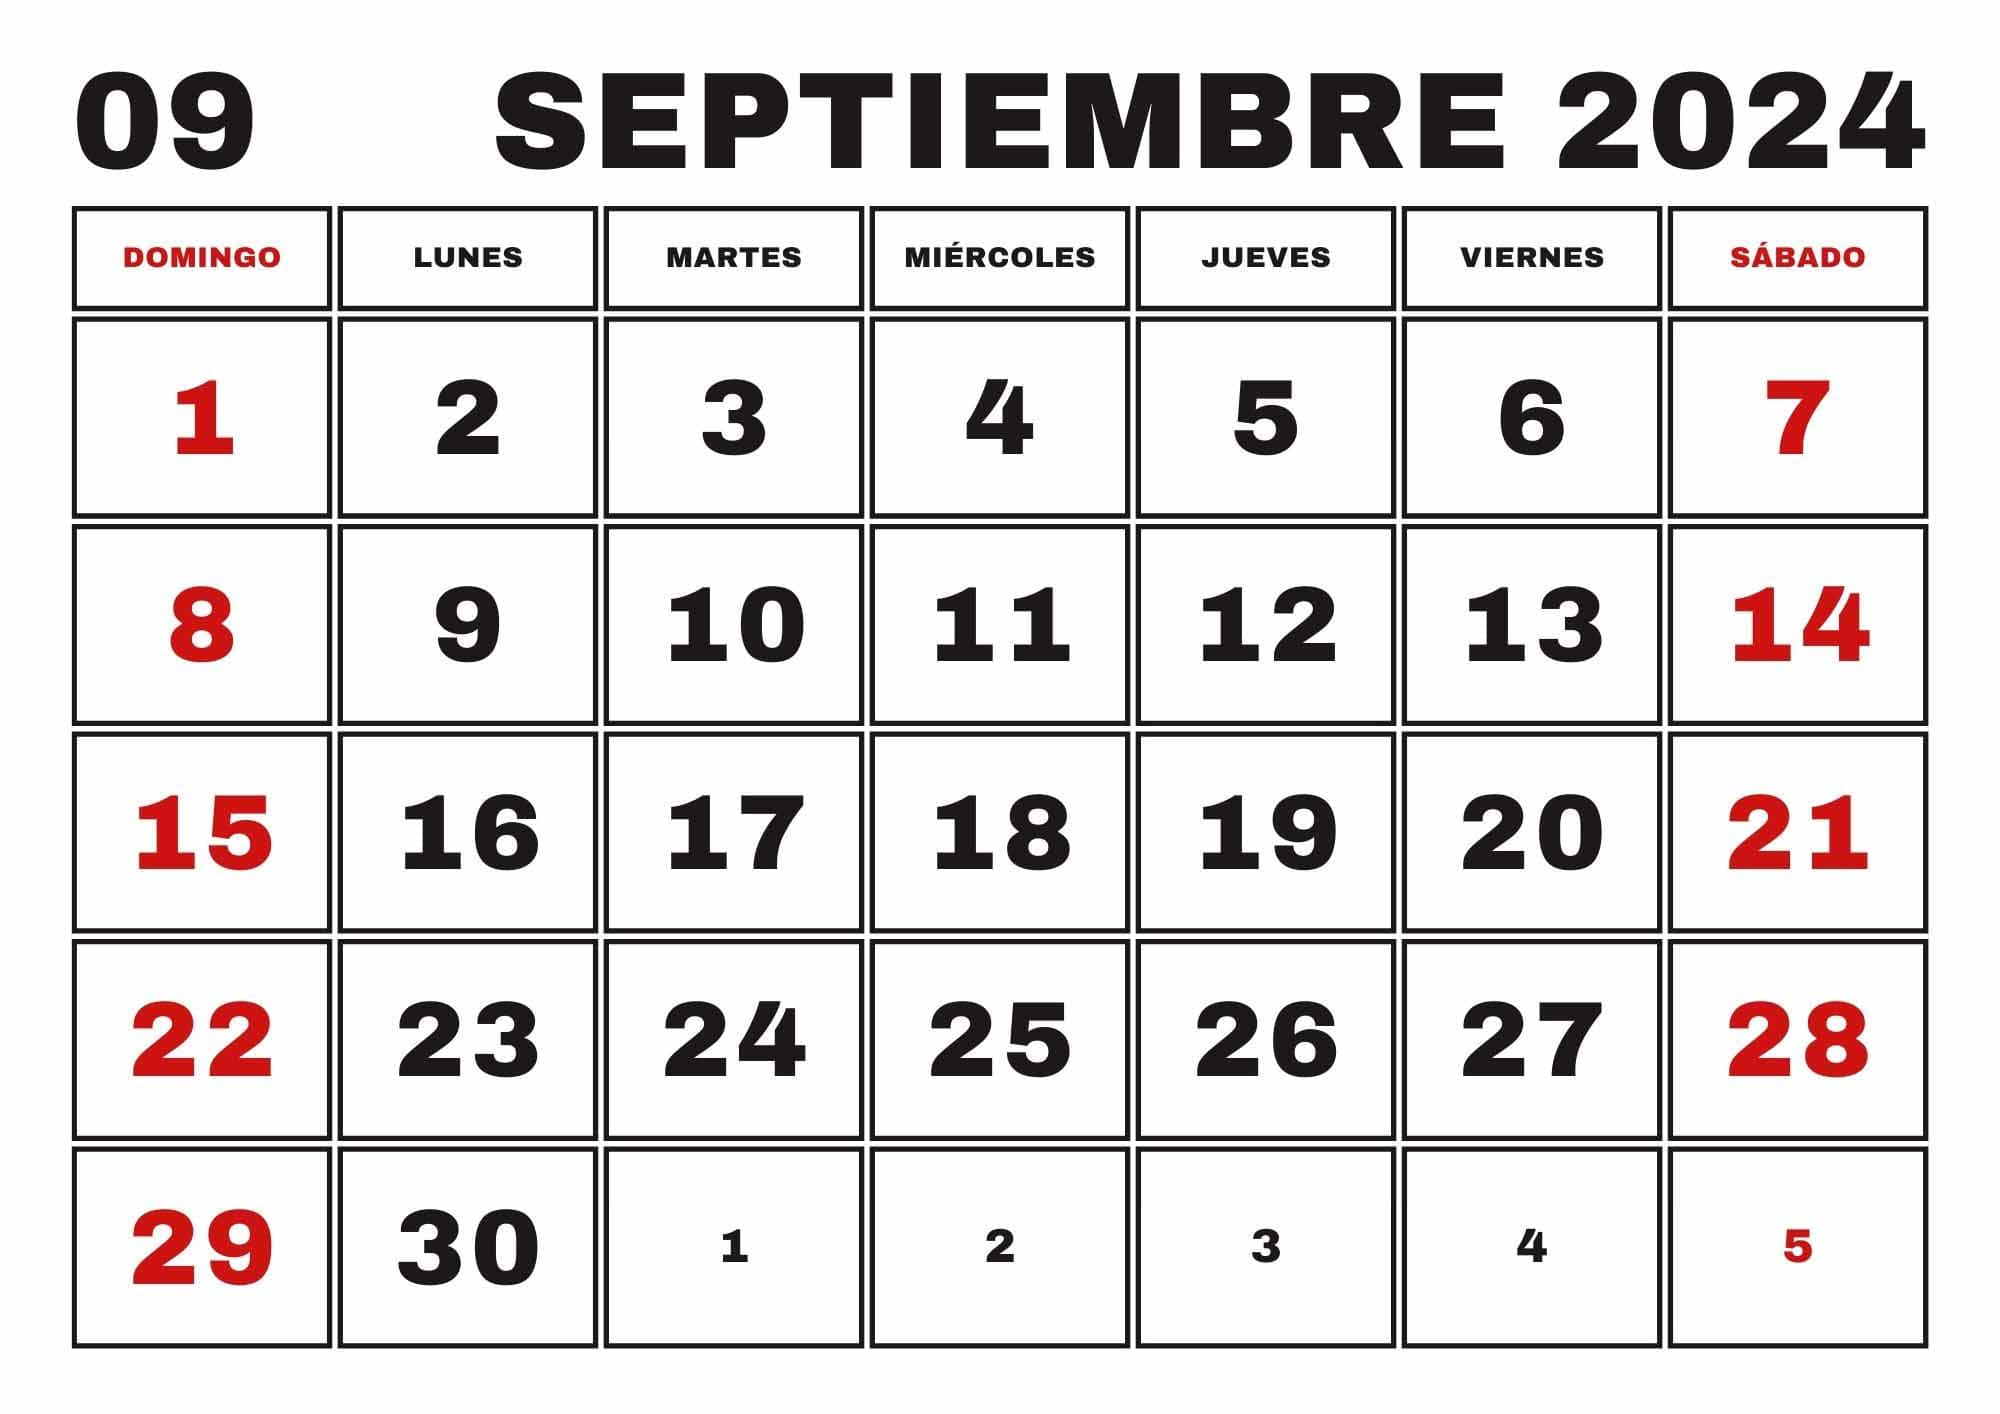 Calendario Septiembre 2024, Obtenga aquí el Calendario Septiembre 2024 Imprimible de Alta Calidad